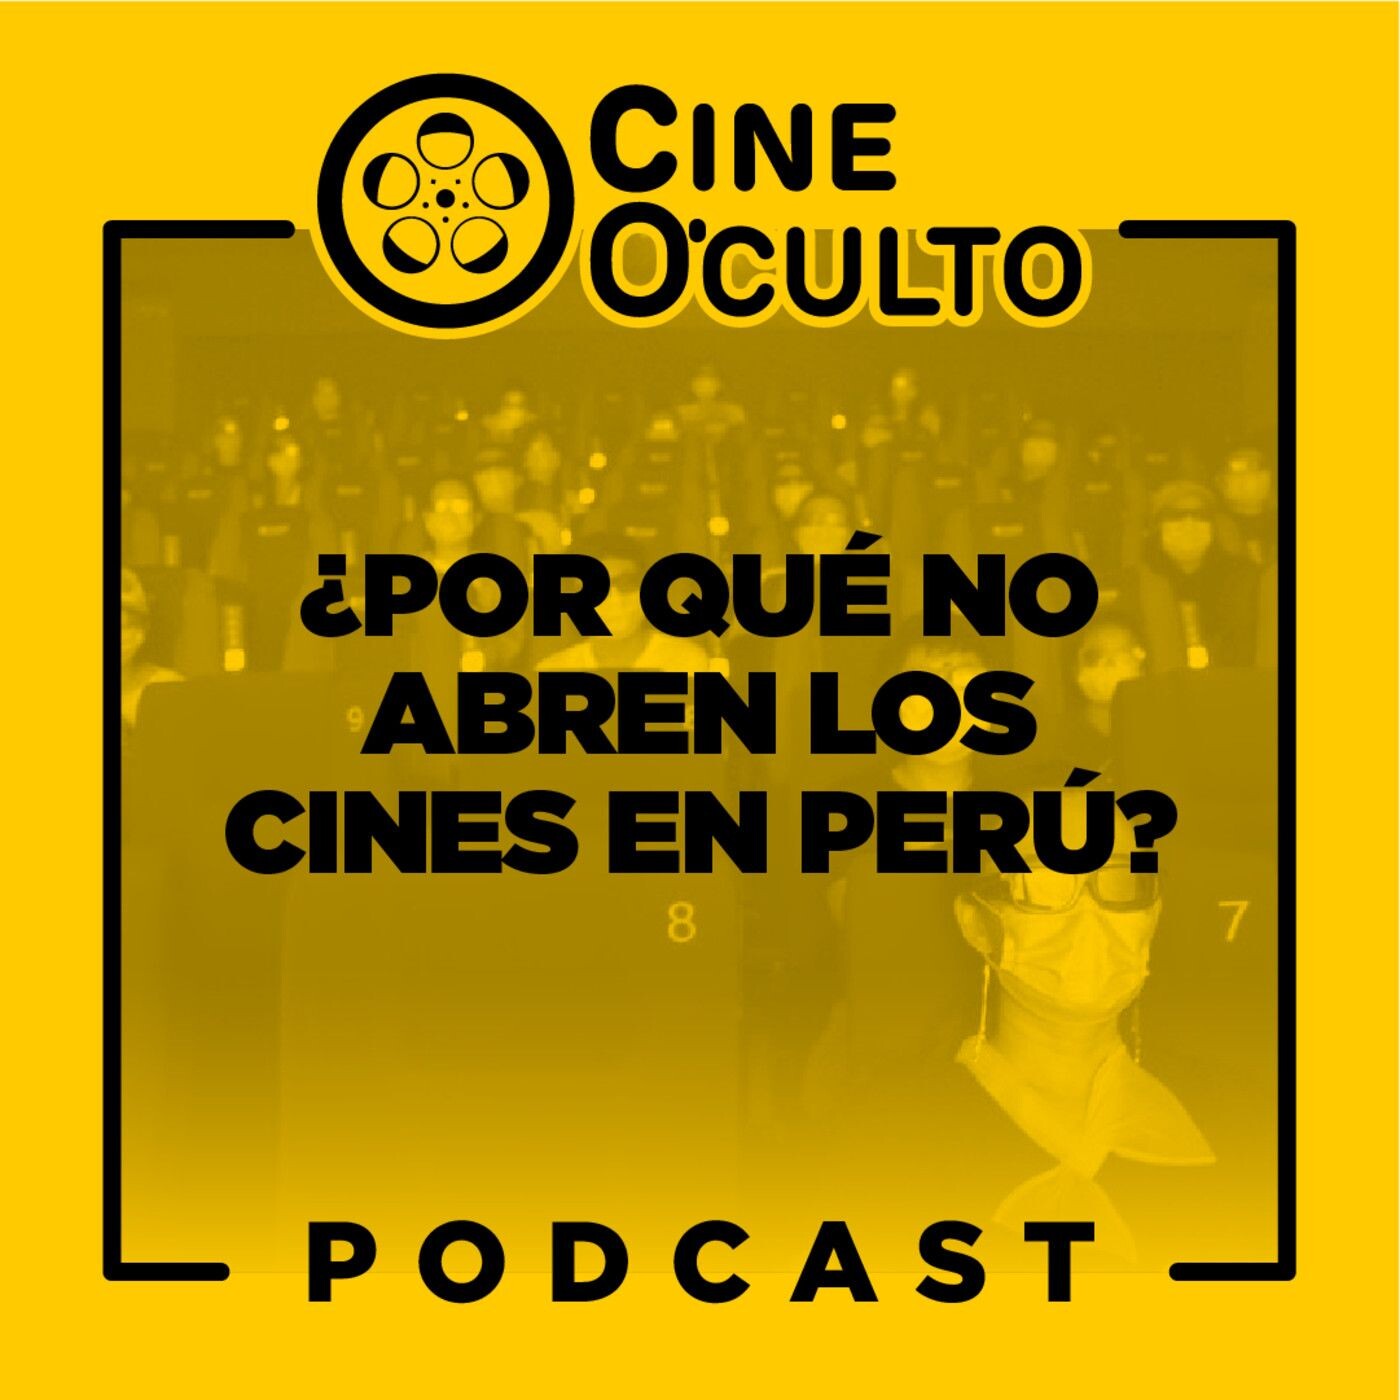 #Podcast: ¿Por qué no abren los CINES en PERÚ? - HBO Max llegó a Latinoamérica